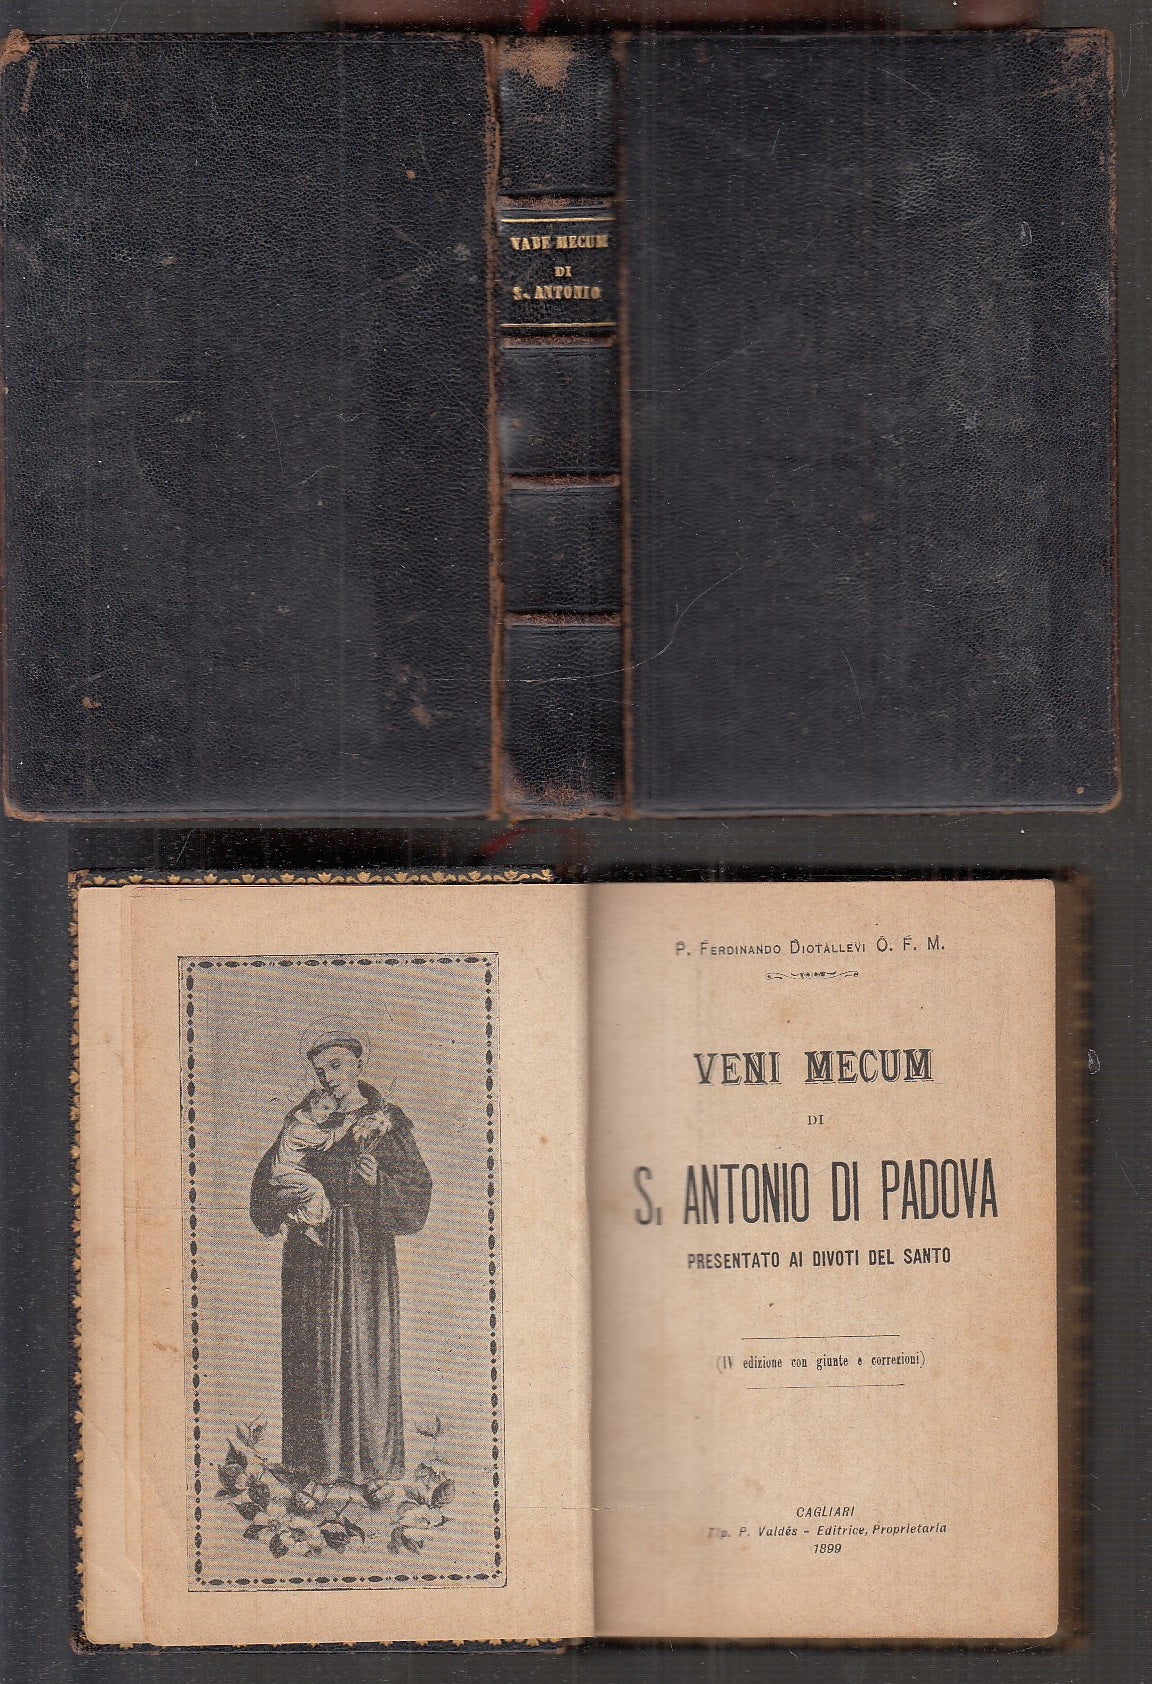 LD- VENI MECUM DI S. ANTONIO DI PADOVA - DIOTALLEVI - VALDES --- 1899 - C- XFS37